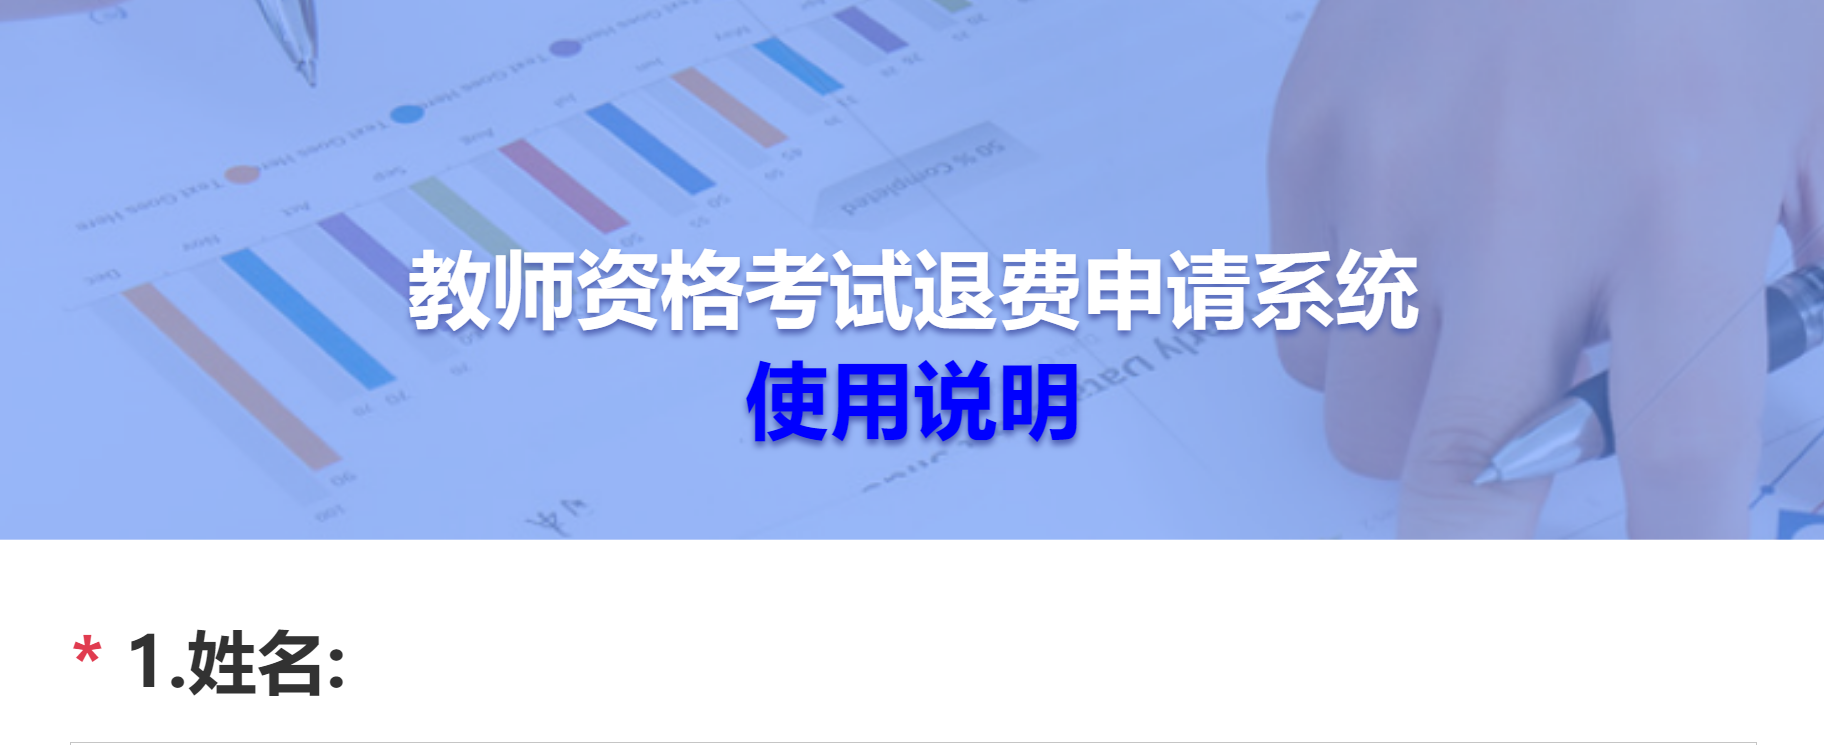 2021下半年天津中小学教师资格考试笔试考生退费申请公告【附退费入口】